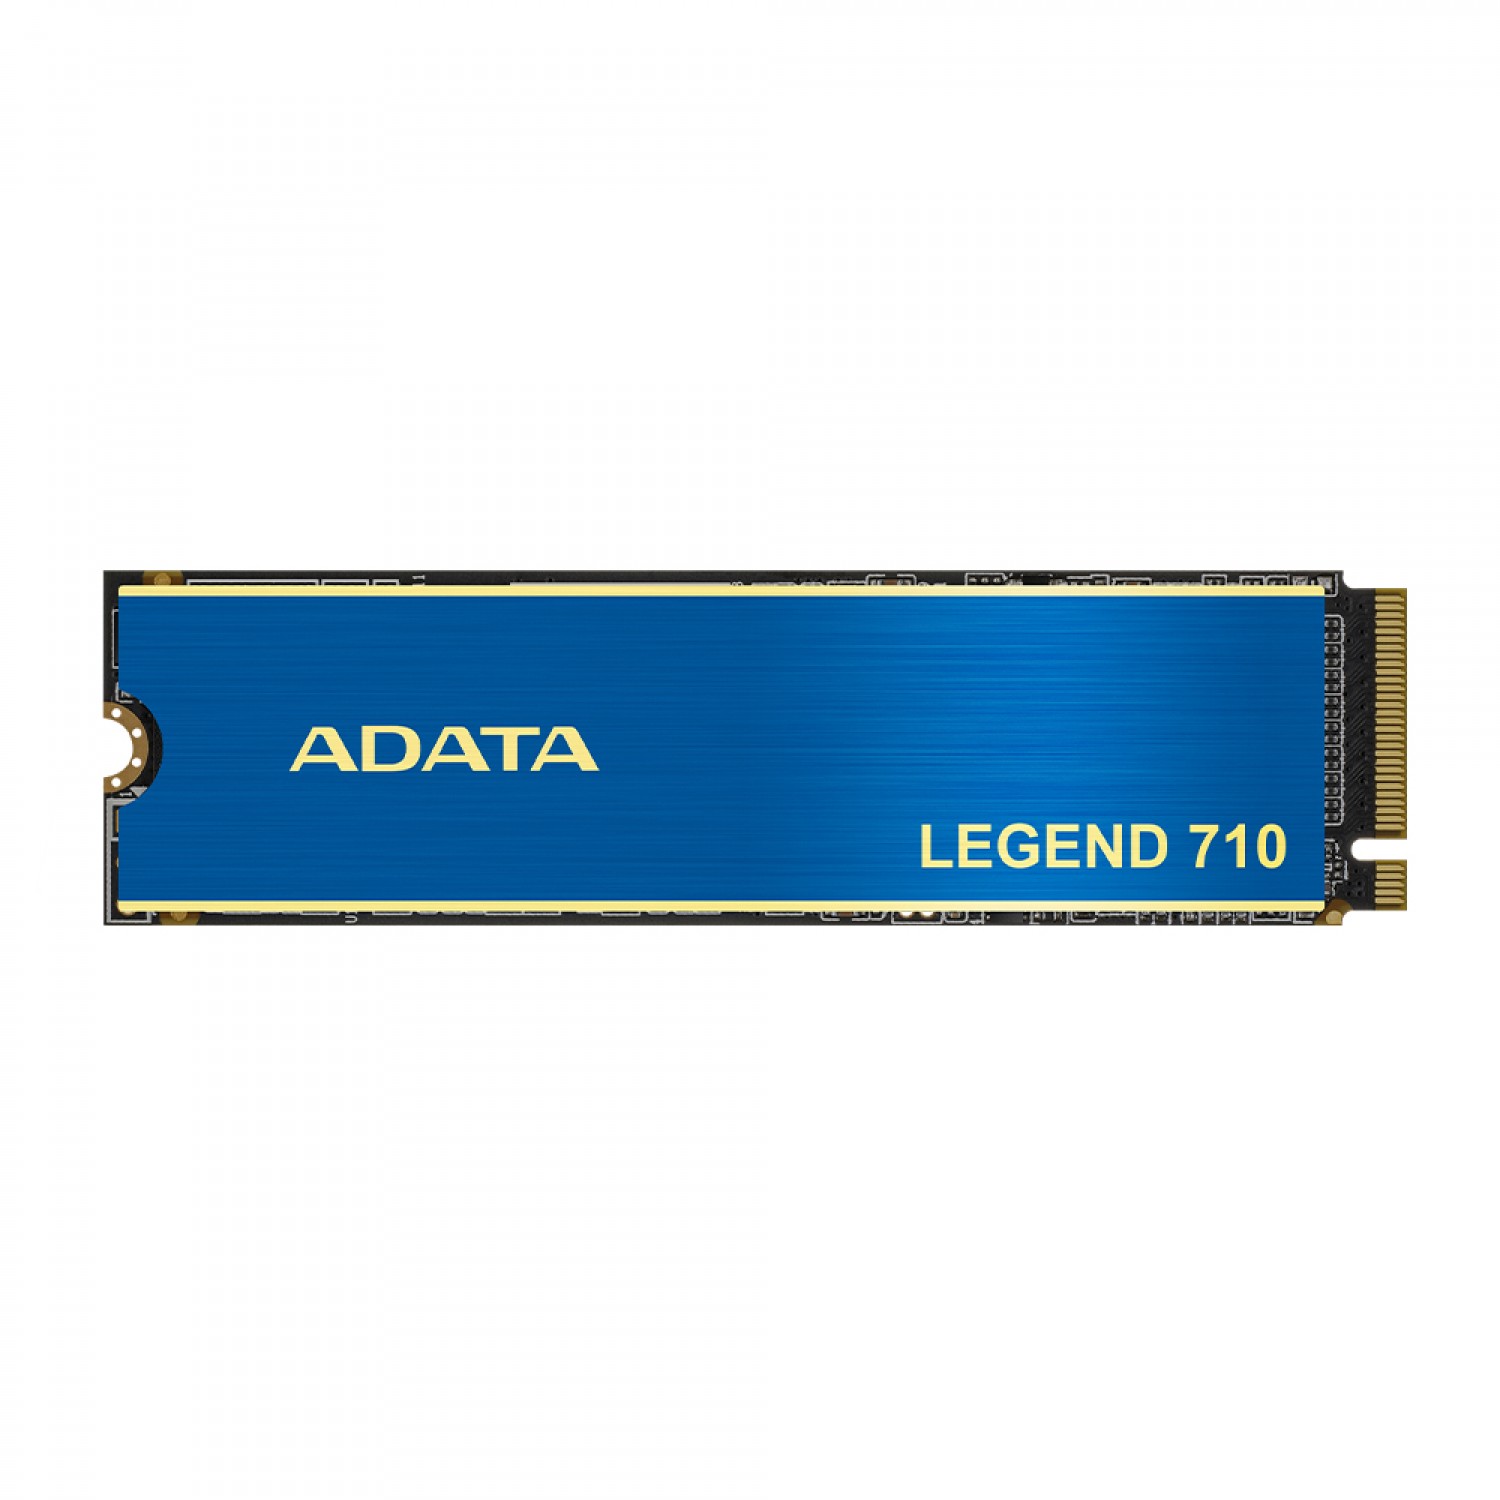 حافظه اس اس دی ADATA Legend 710 1TB